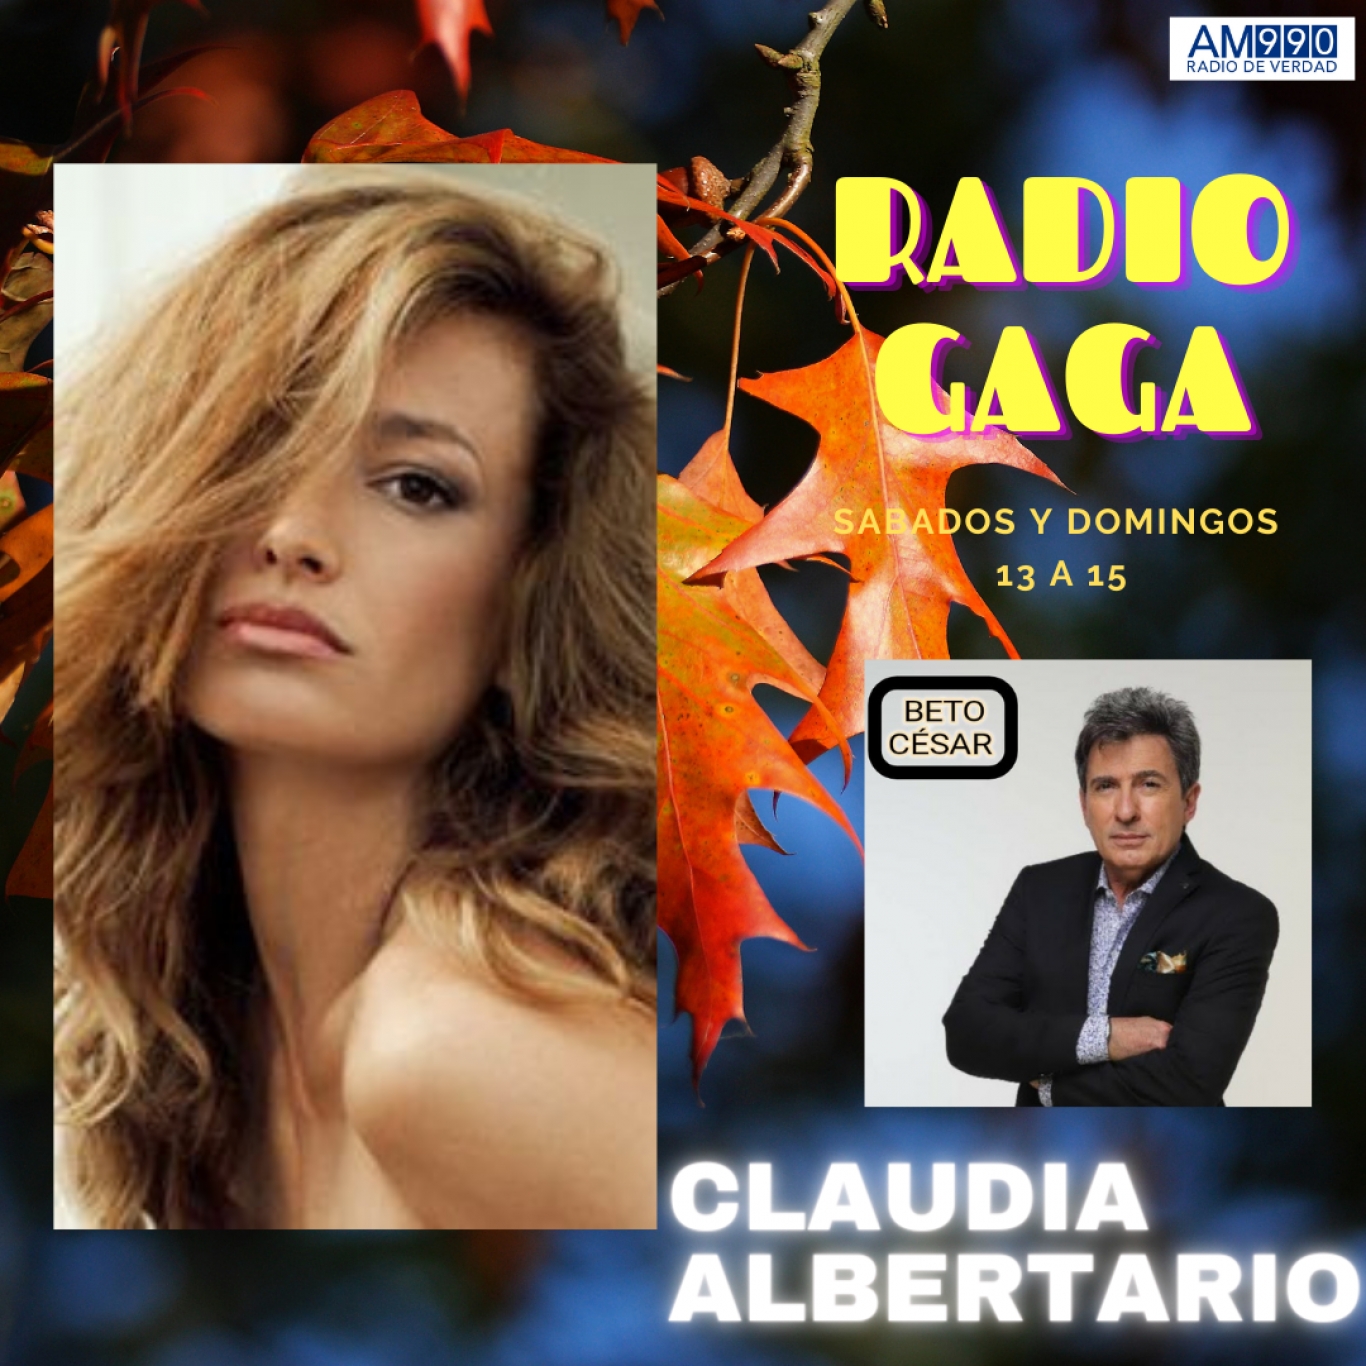 Claudia Albertario desde Miami Beach en exclusiva para Radio GaGa